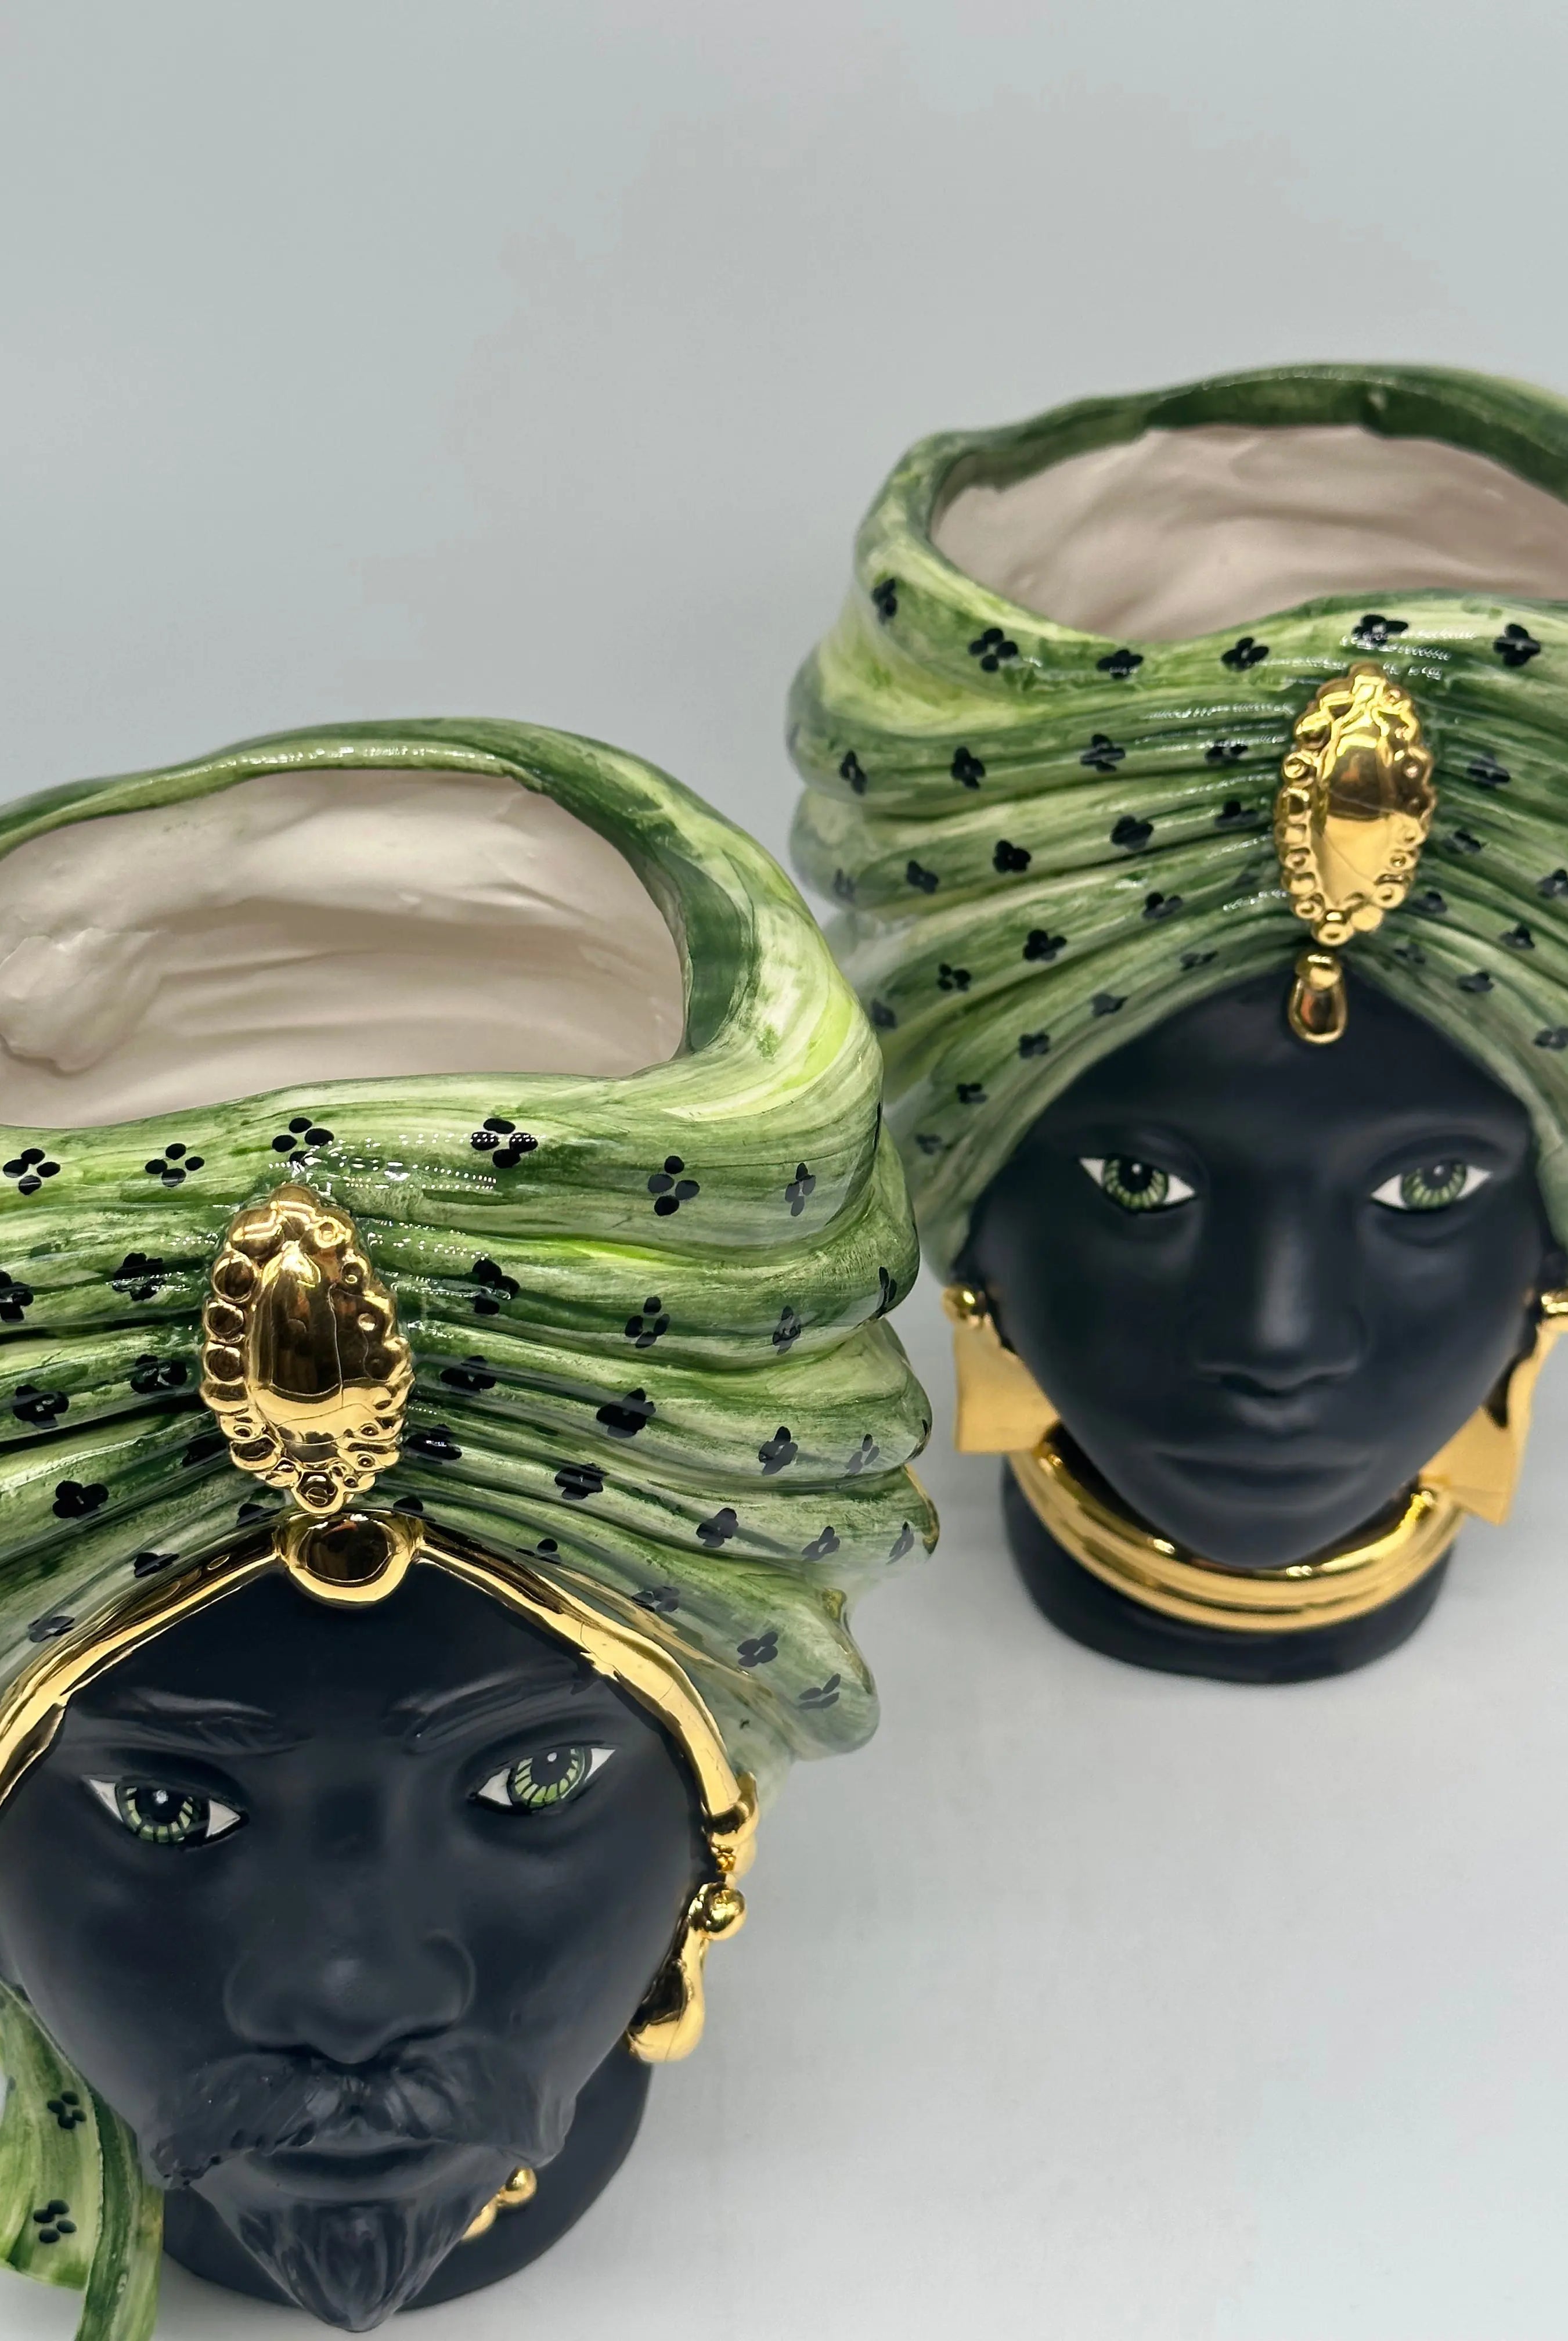 Teste di Moro Atena Ceramica Caltagirone cm H.24 L.18 Artigianale Verde Pois Nero Oro DD CERAMICHE SICILIANE